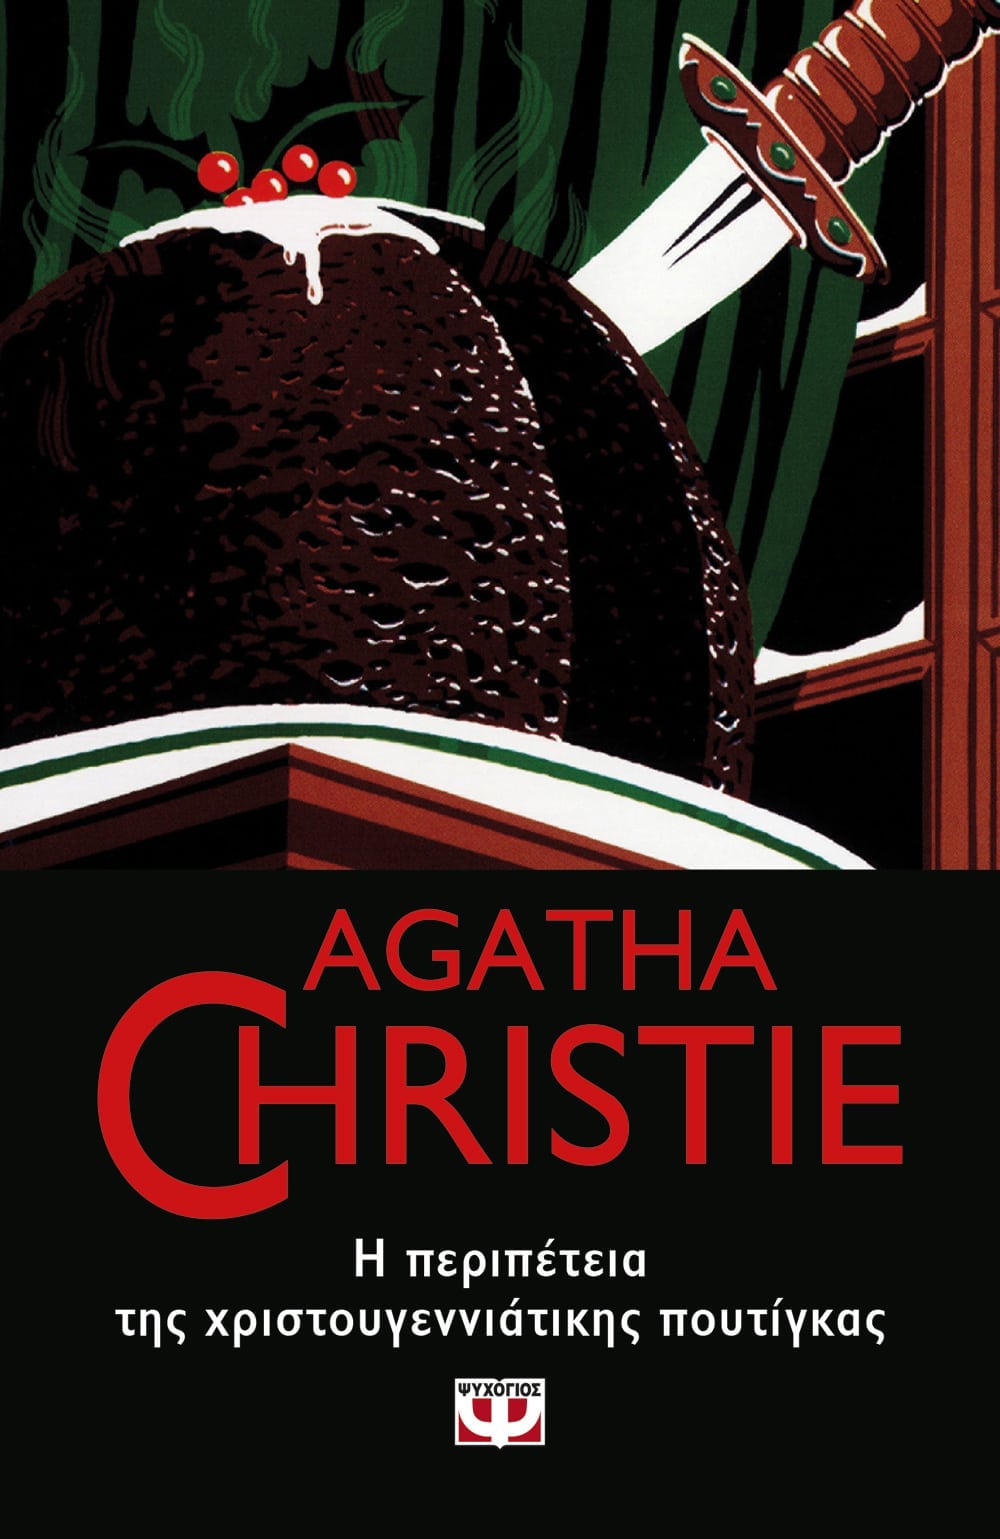 Η Περιπέτεια της Χριστουγεννιάτικης Πουτίγκας - Agatha Christie